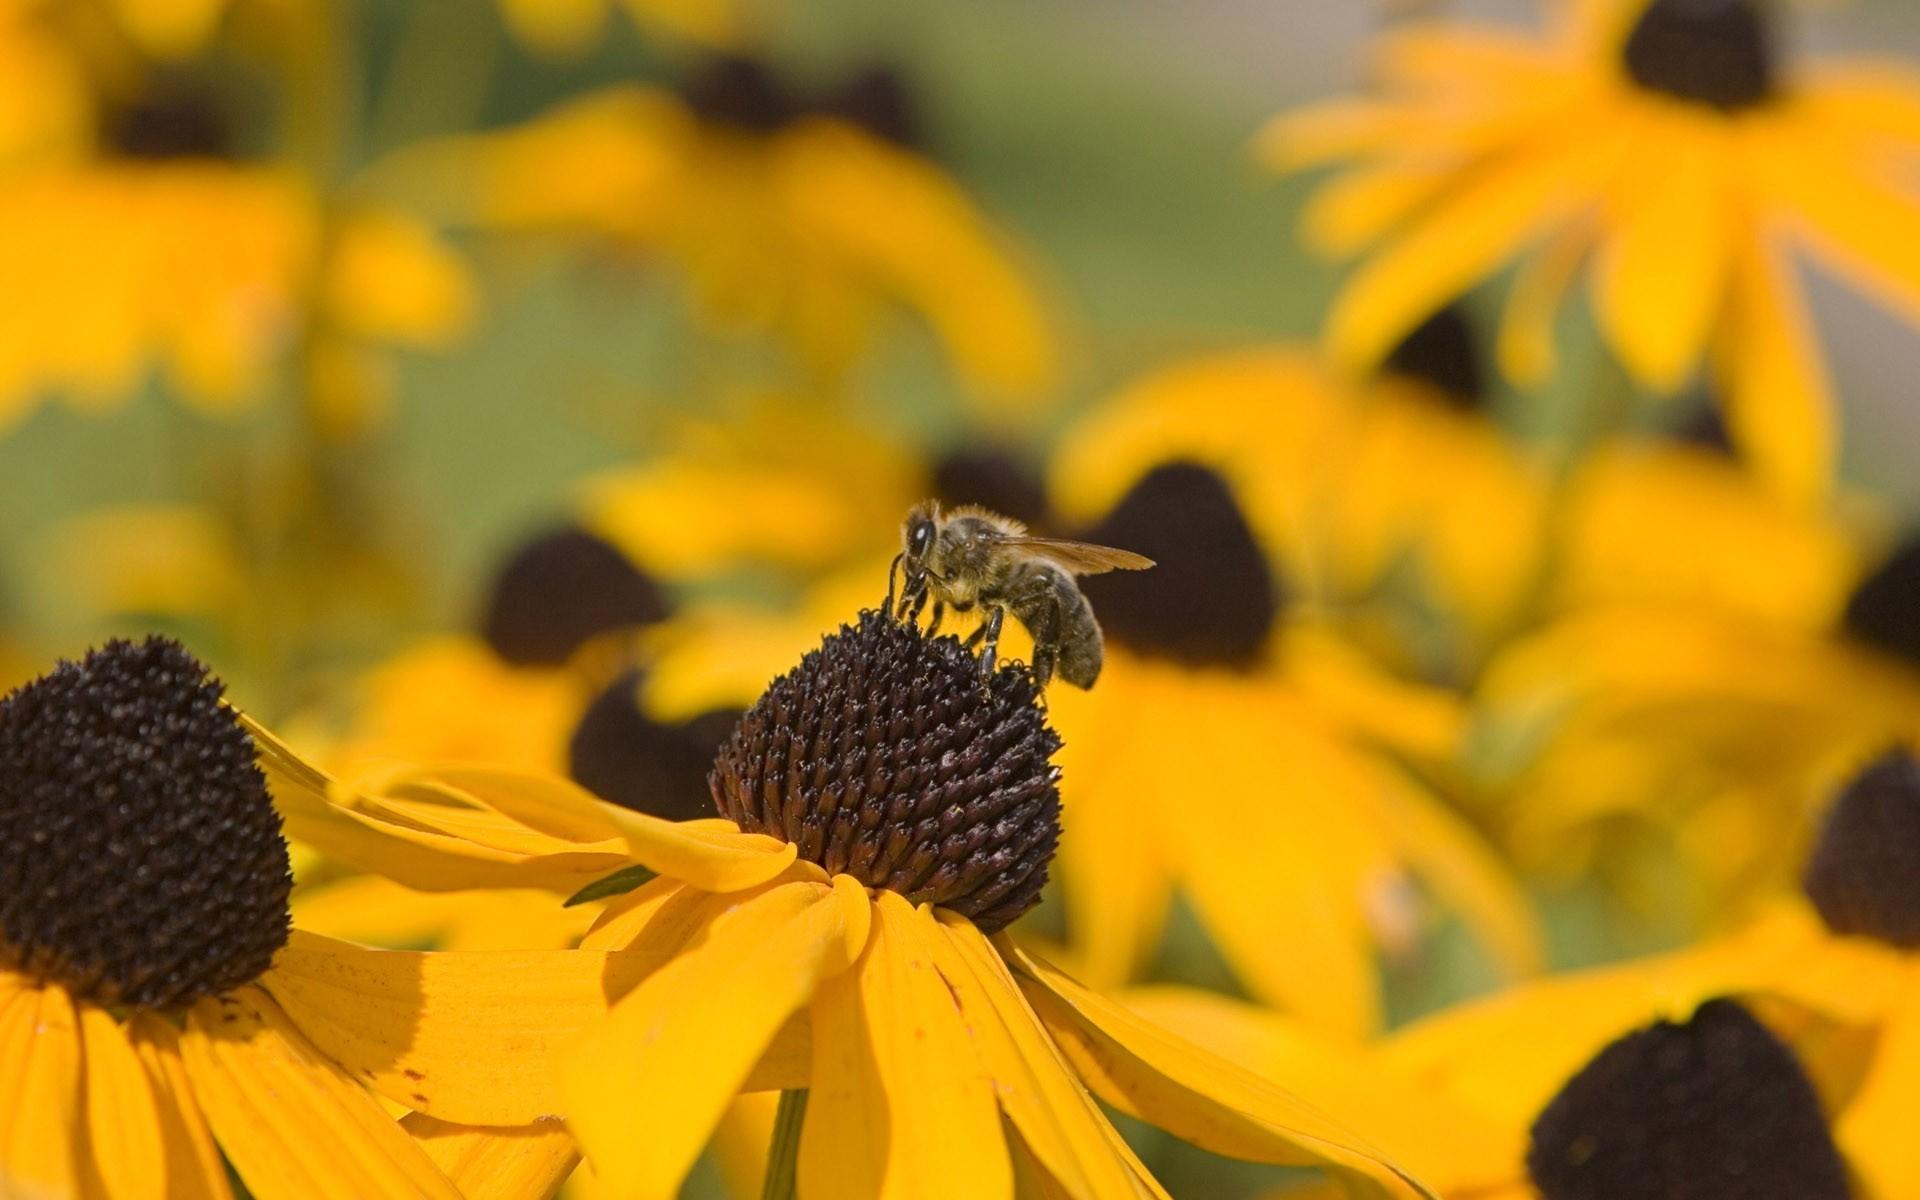 高清蜜蜂采蜜时拍摄的图片大全3